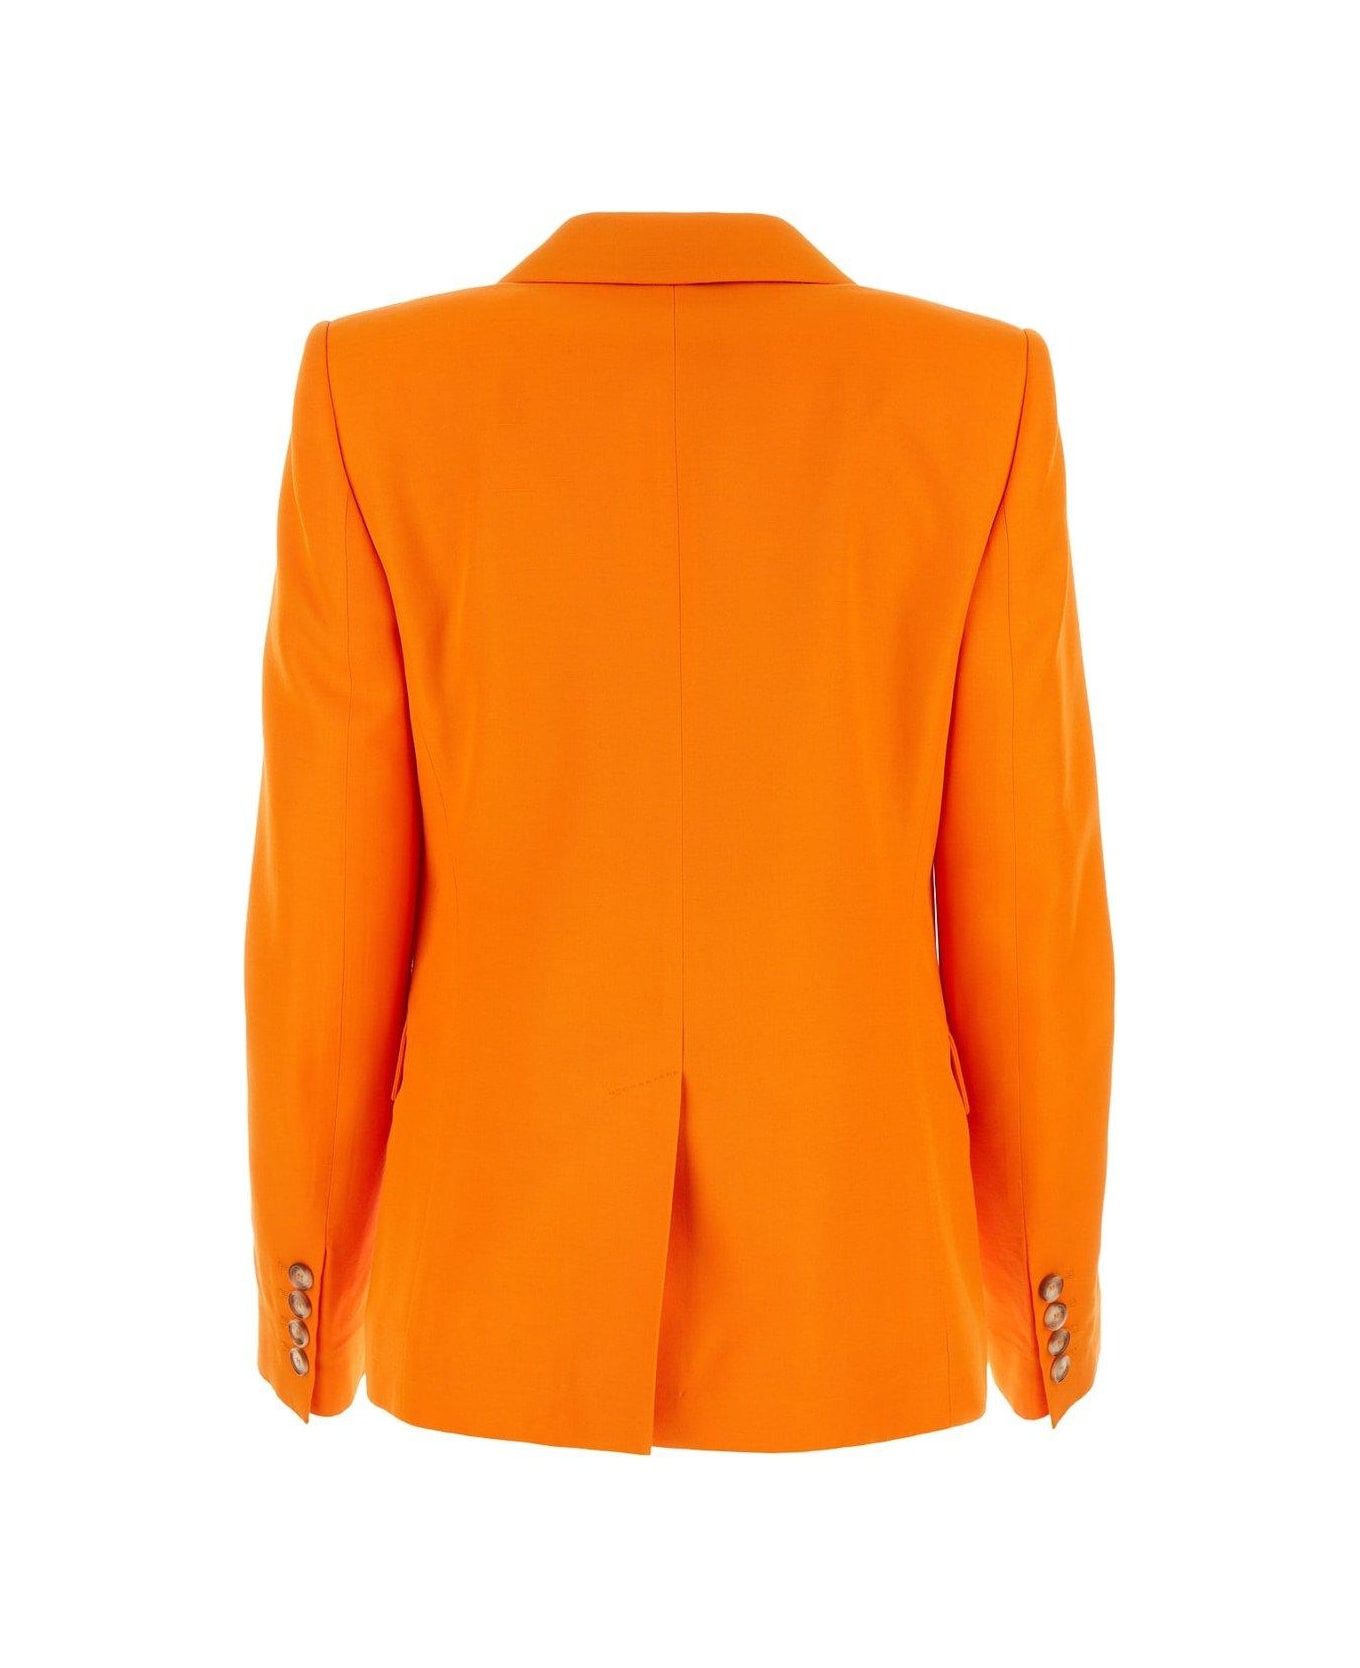 Stella McCartney Iconic Single Breasted Tailored Blazer - Orange